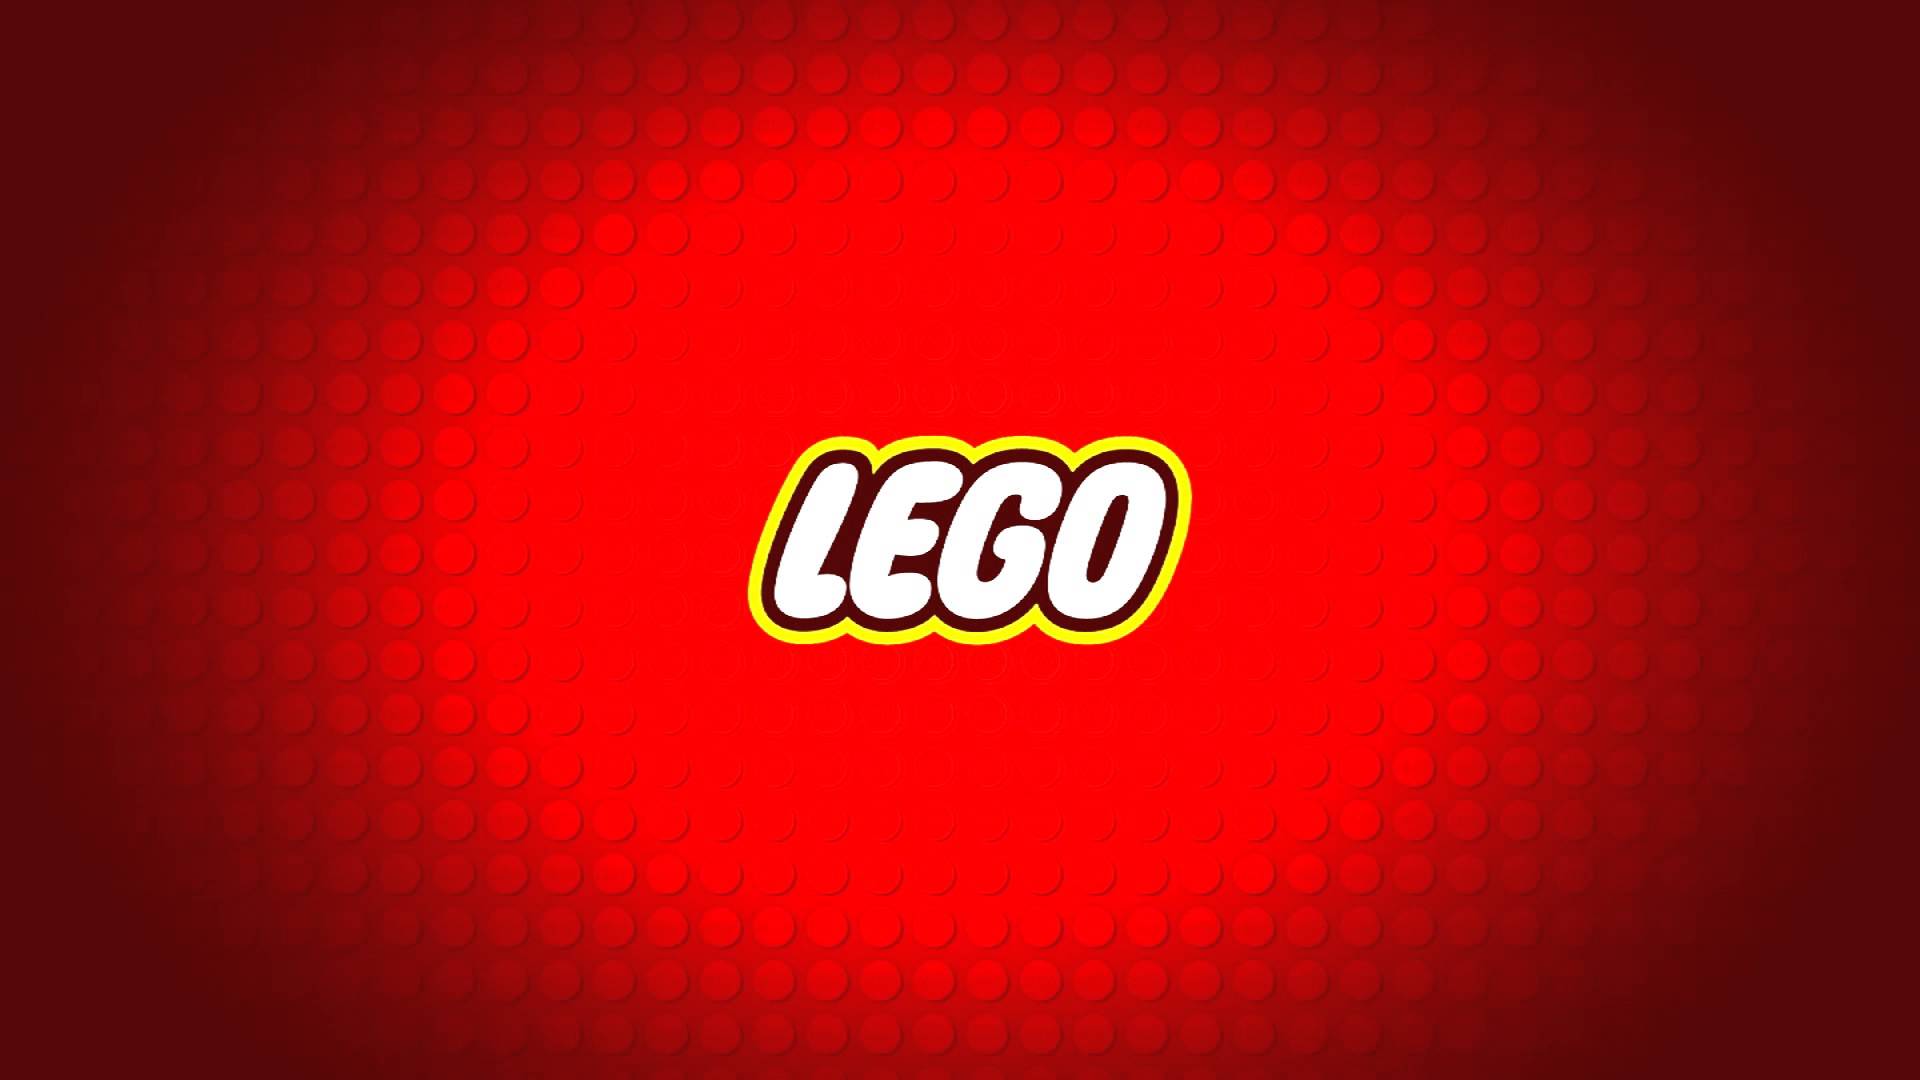 lego, building blocks, creative, factory tour, shmula.com